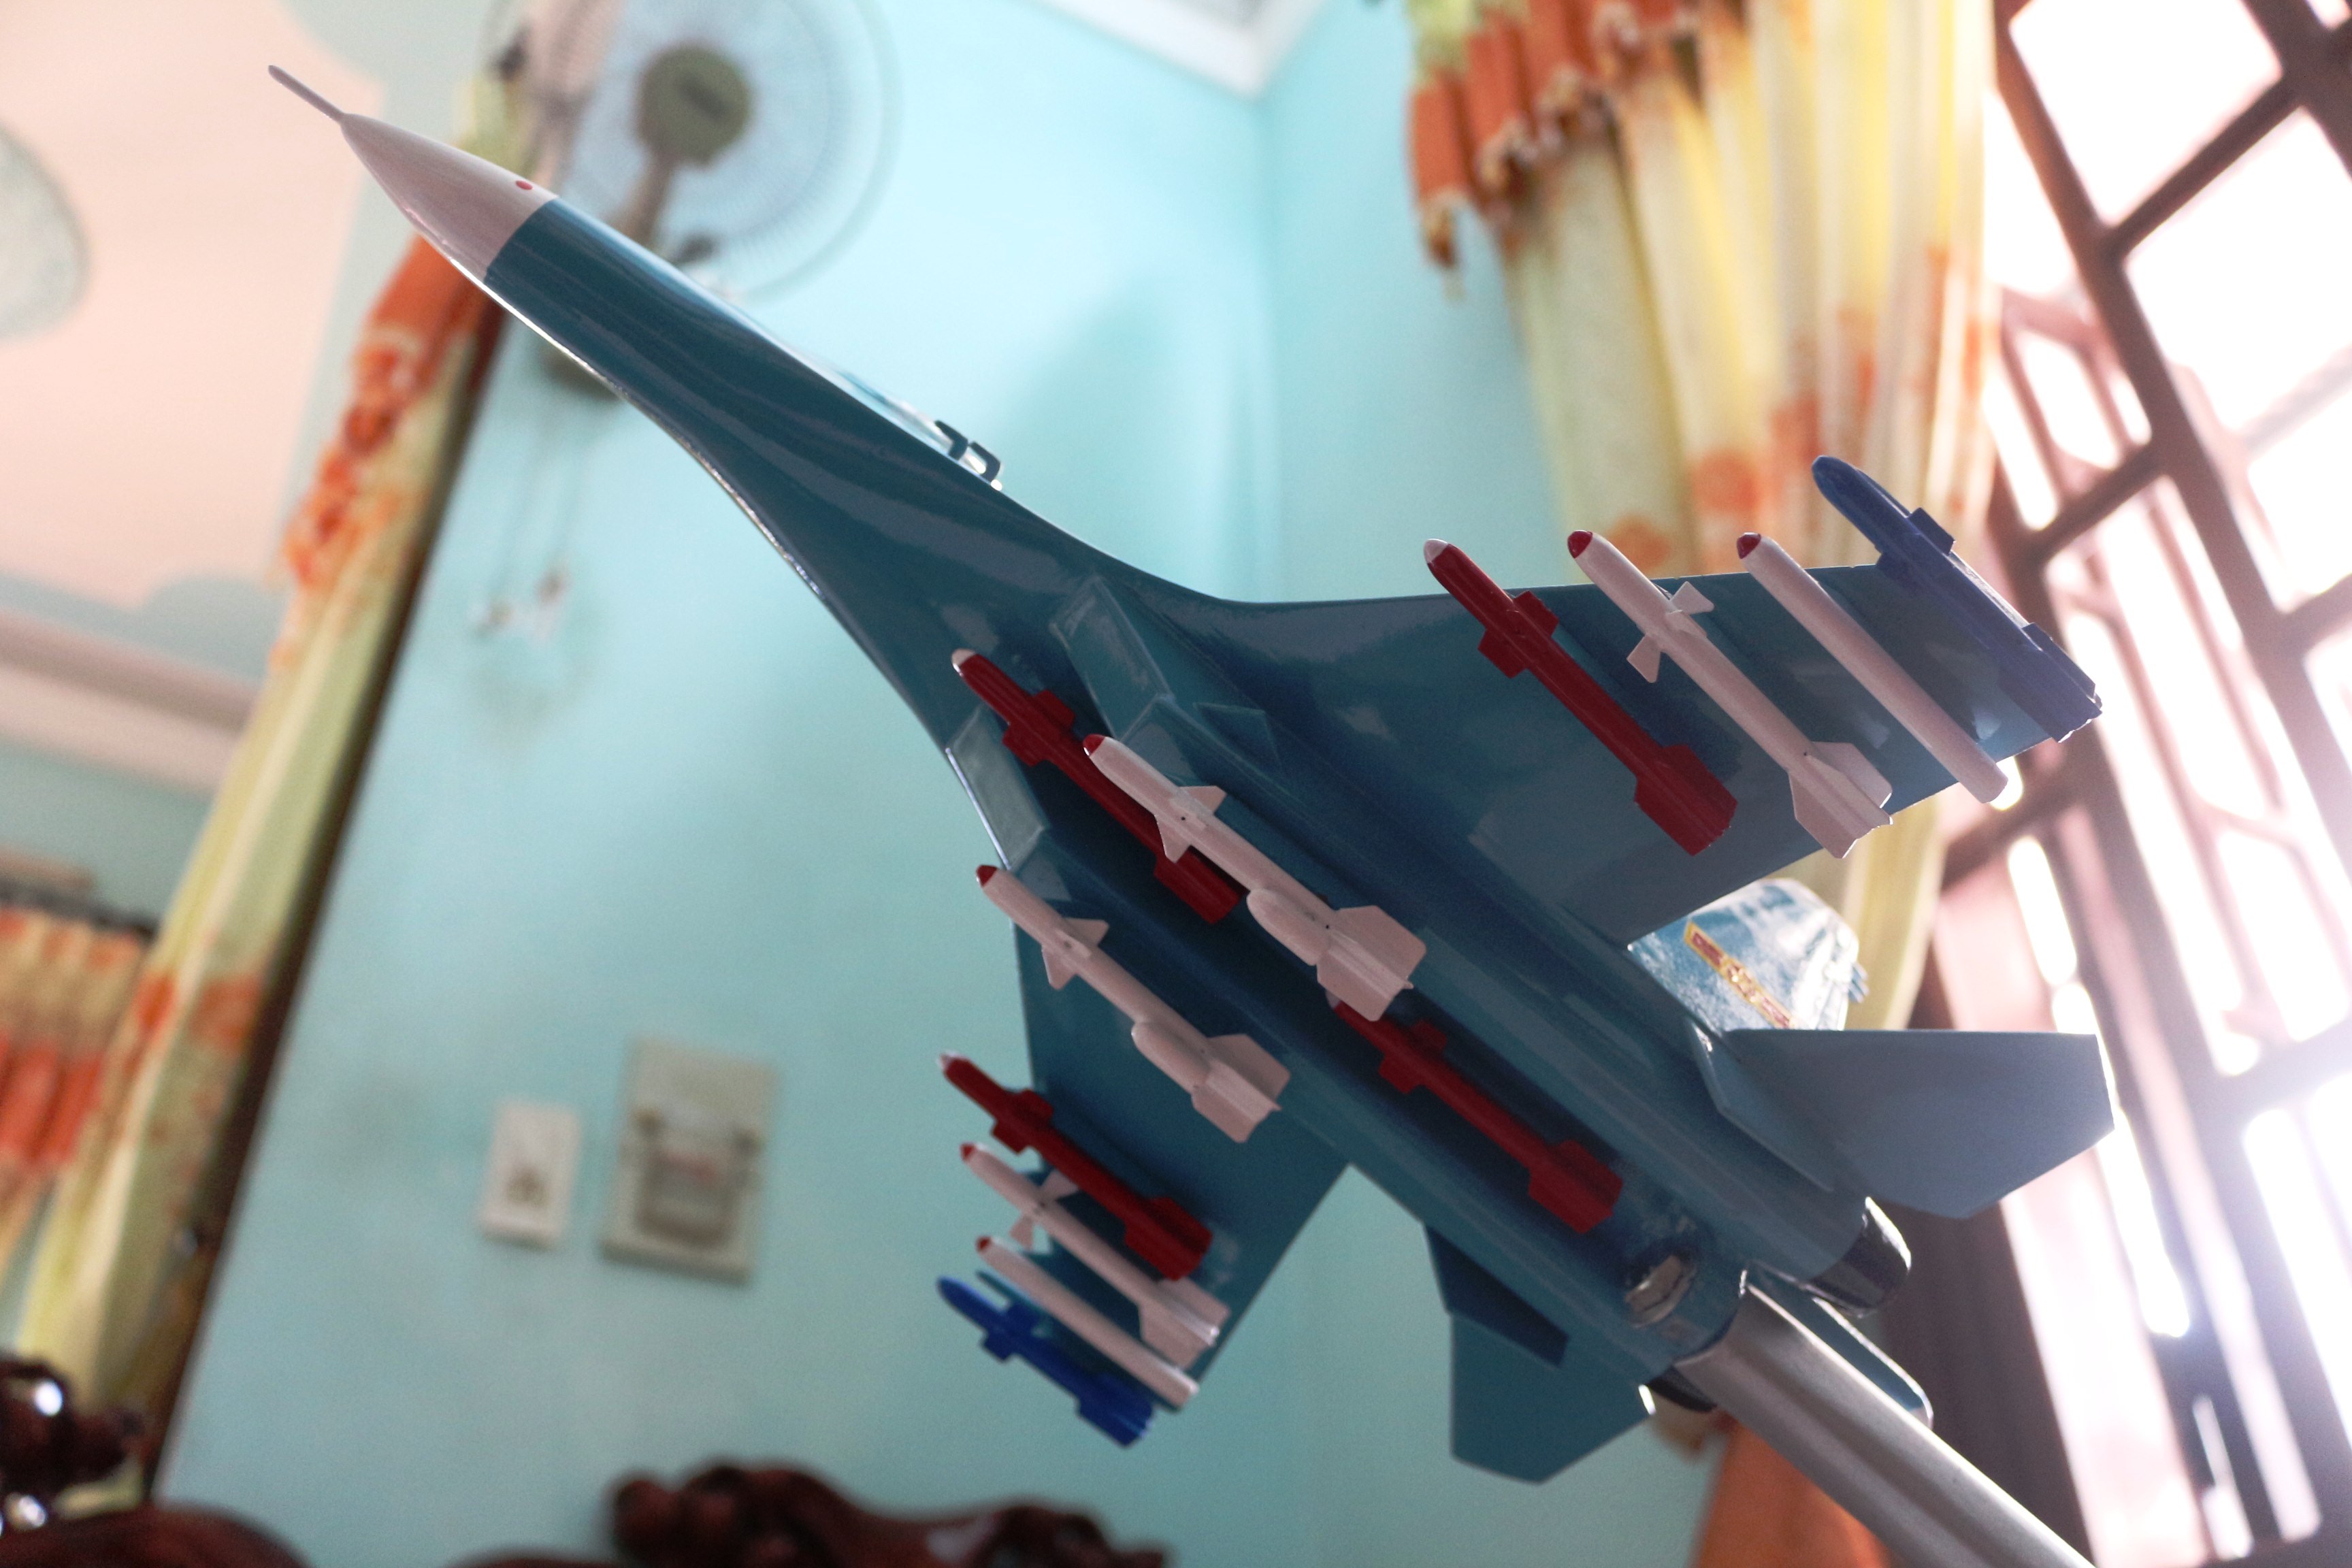 Mô hình máy bay chiến đấu là một sản phẩm độc đáo và thú vị cho những người yêu thích máy bay. Những chiếc máy bay chiến đấu mô hình được thiết kế với độ chính xác cao và chi tiết hoàn hảo. Hãy thưởng thức hình ảnh này để khám phá thế giới mô hình máy bay chiến đấu.